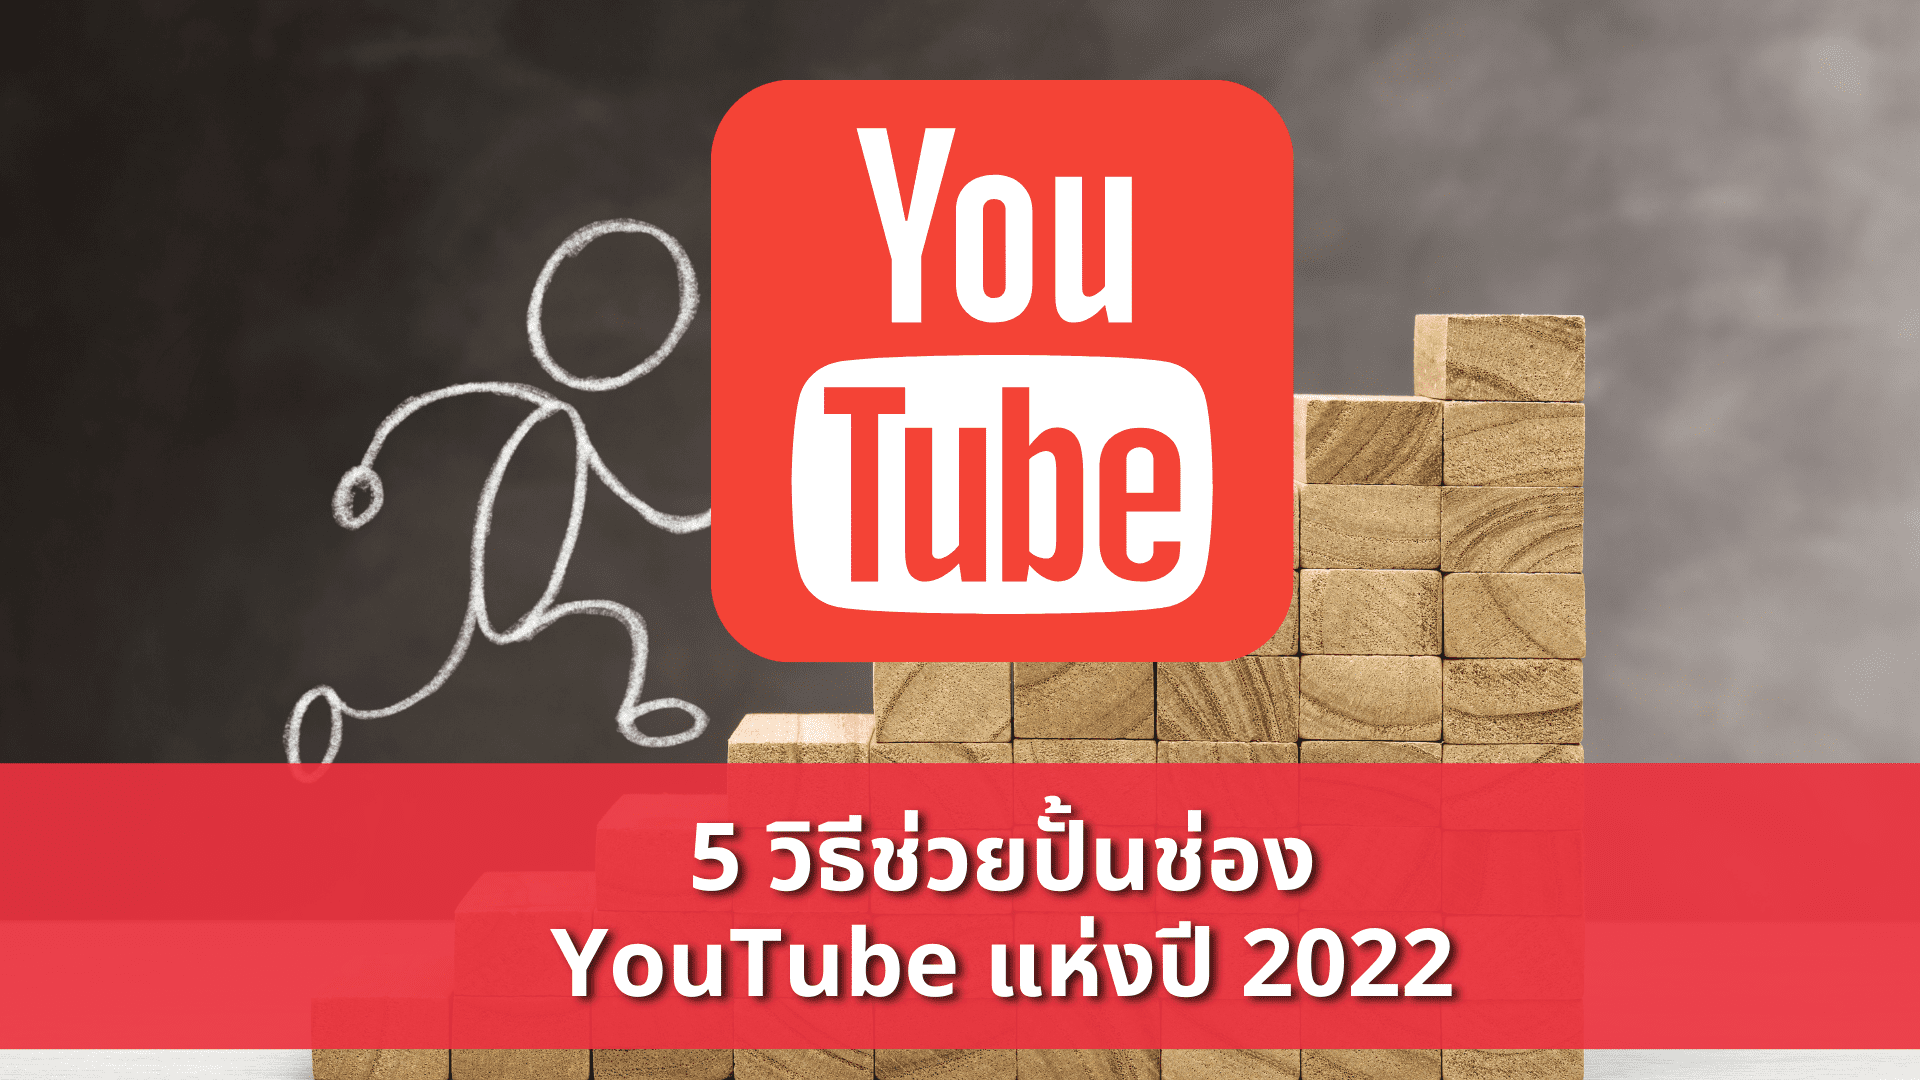 5 วิธีช่วยปั้นช่อง YouTube 2022